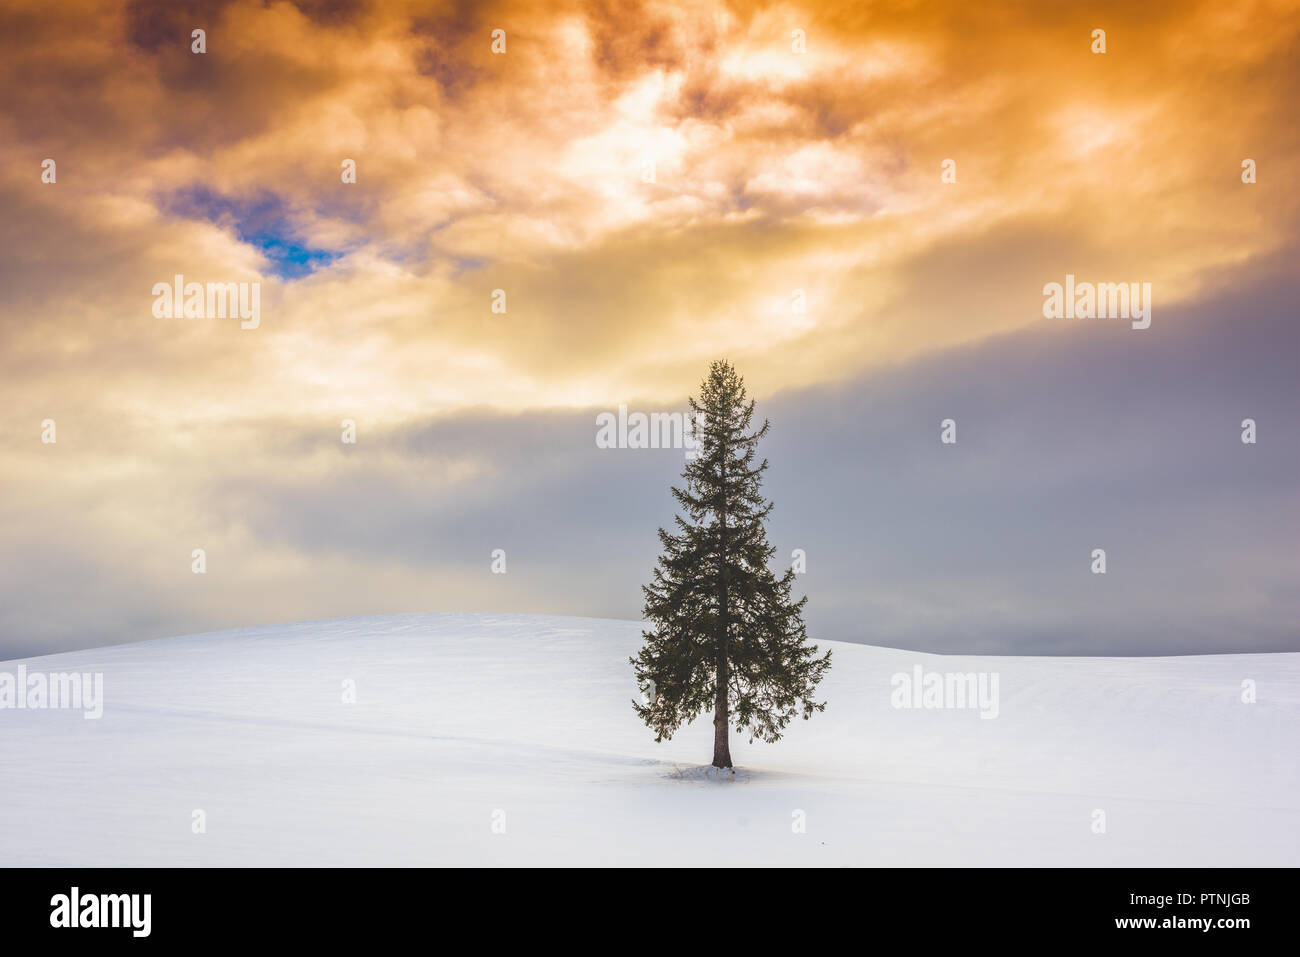 Biei, Hokkaido, Japan at the Christmas Tree in winter. Stock Photo